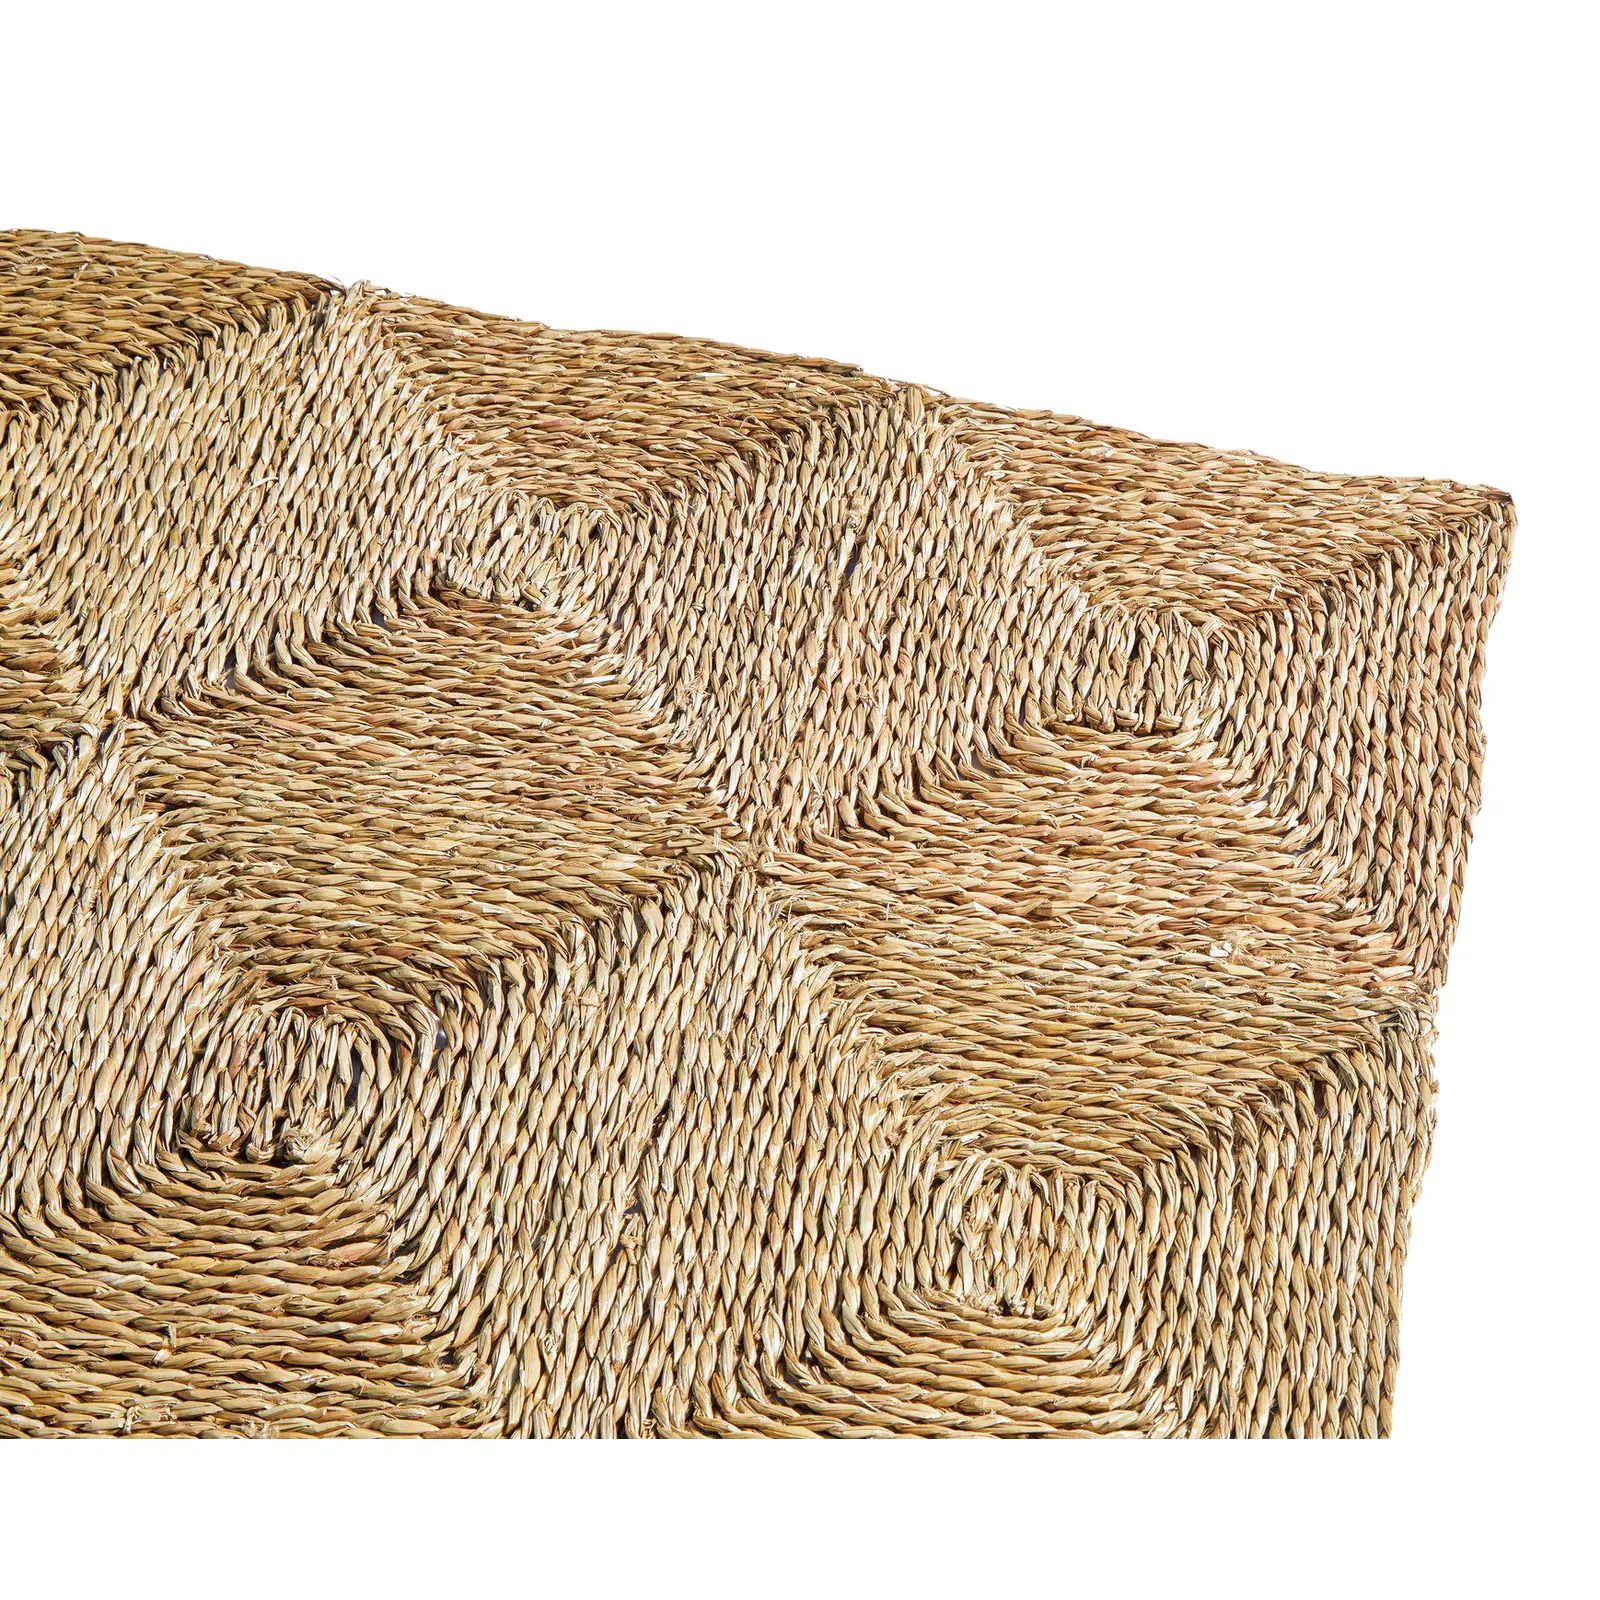 Rush House for Chairish Original Seagrass Rug, 9' x 12' | Chairish